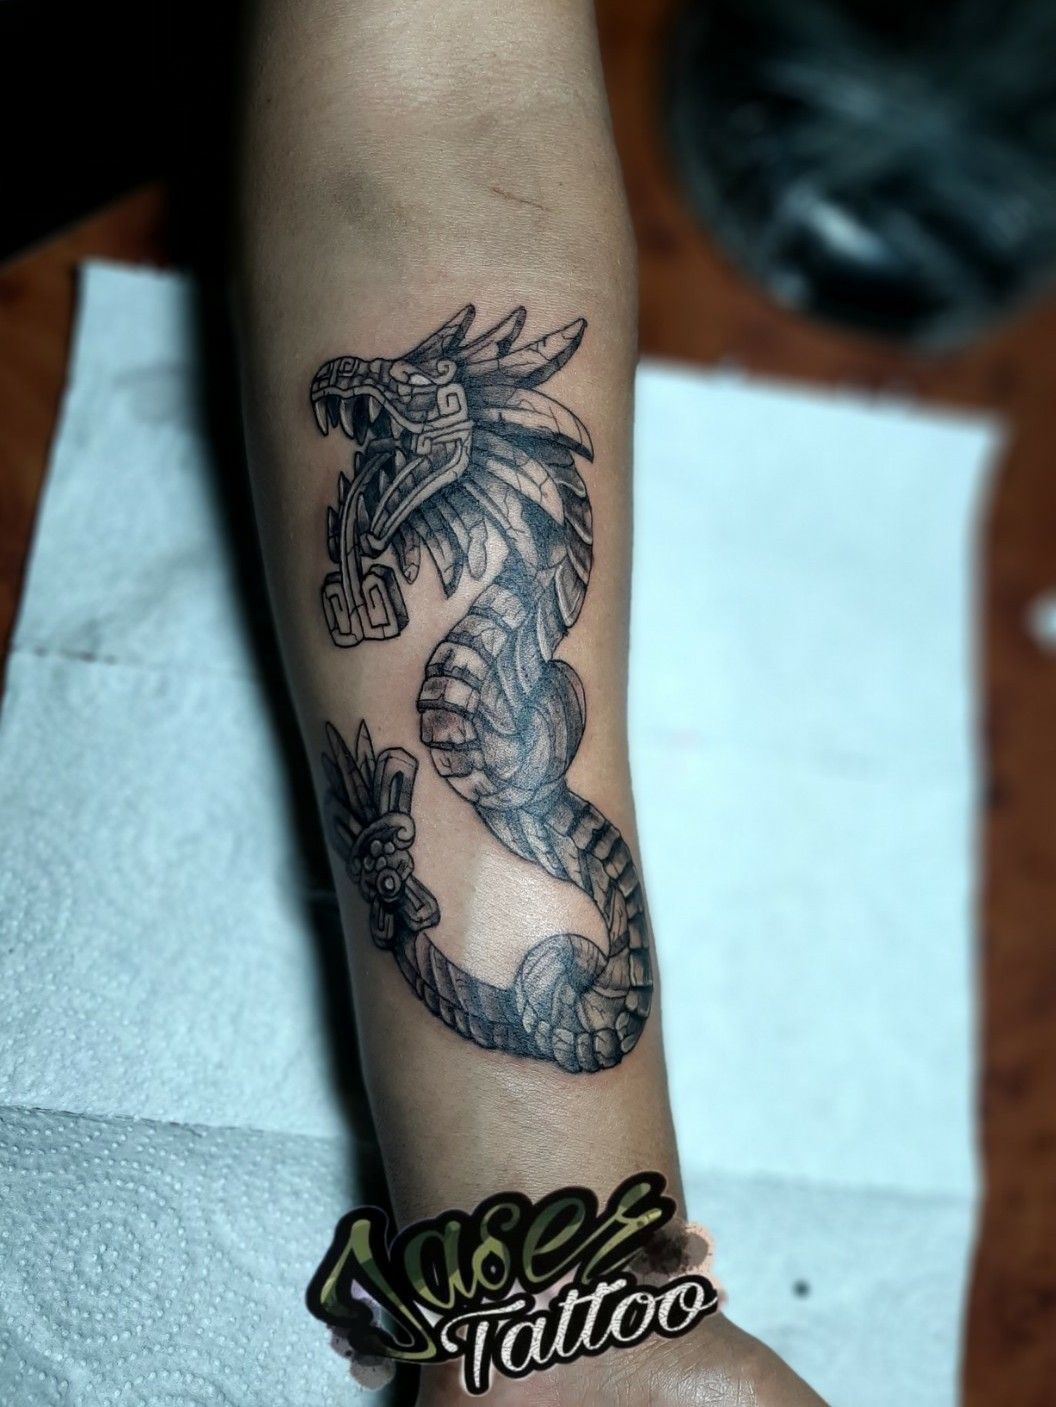 Tattoo uploaded by Jaser Tattoo • #tatuaje #blackandgrey #venado